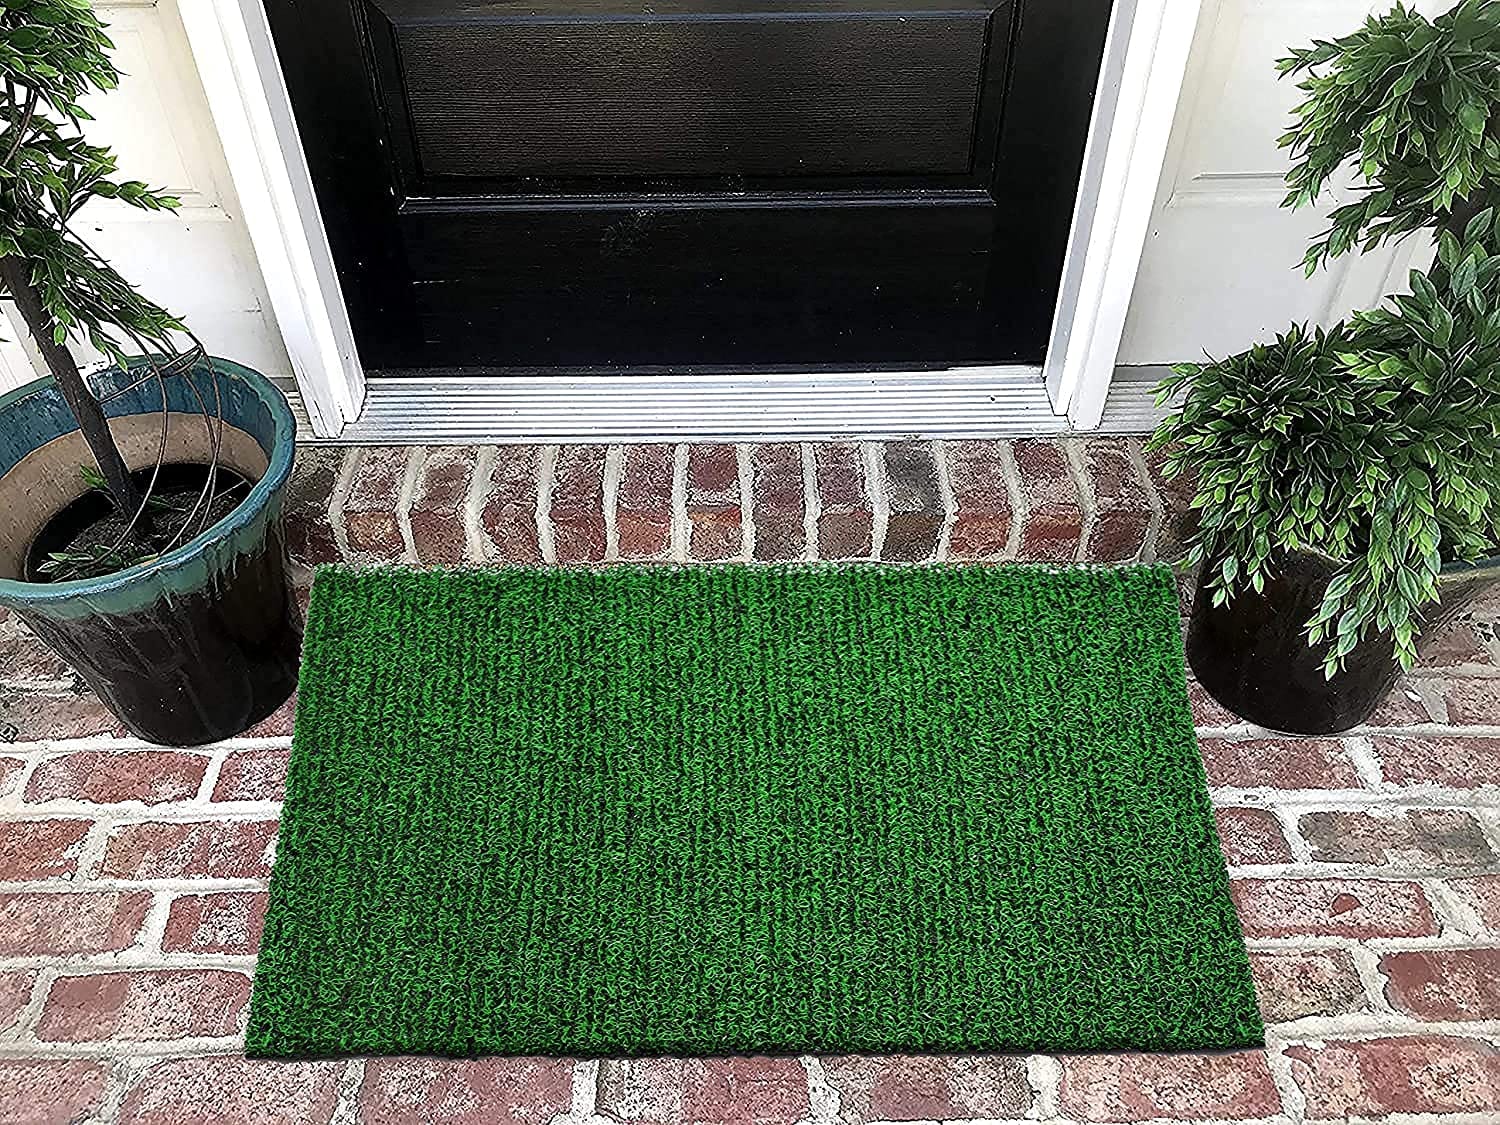 FreshDcart Artificial Grass Mats (3 x 2 Feet)